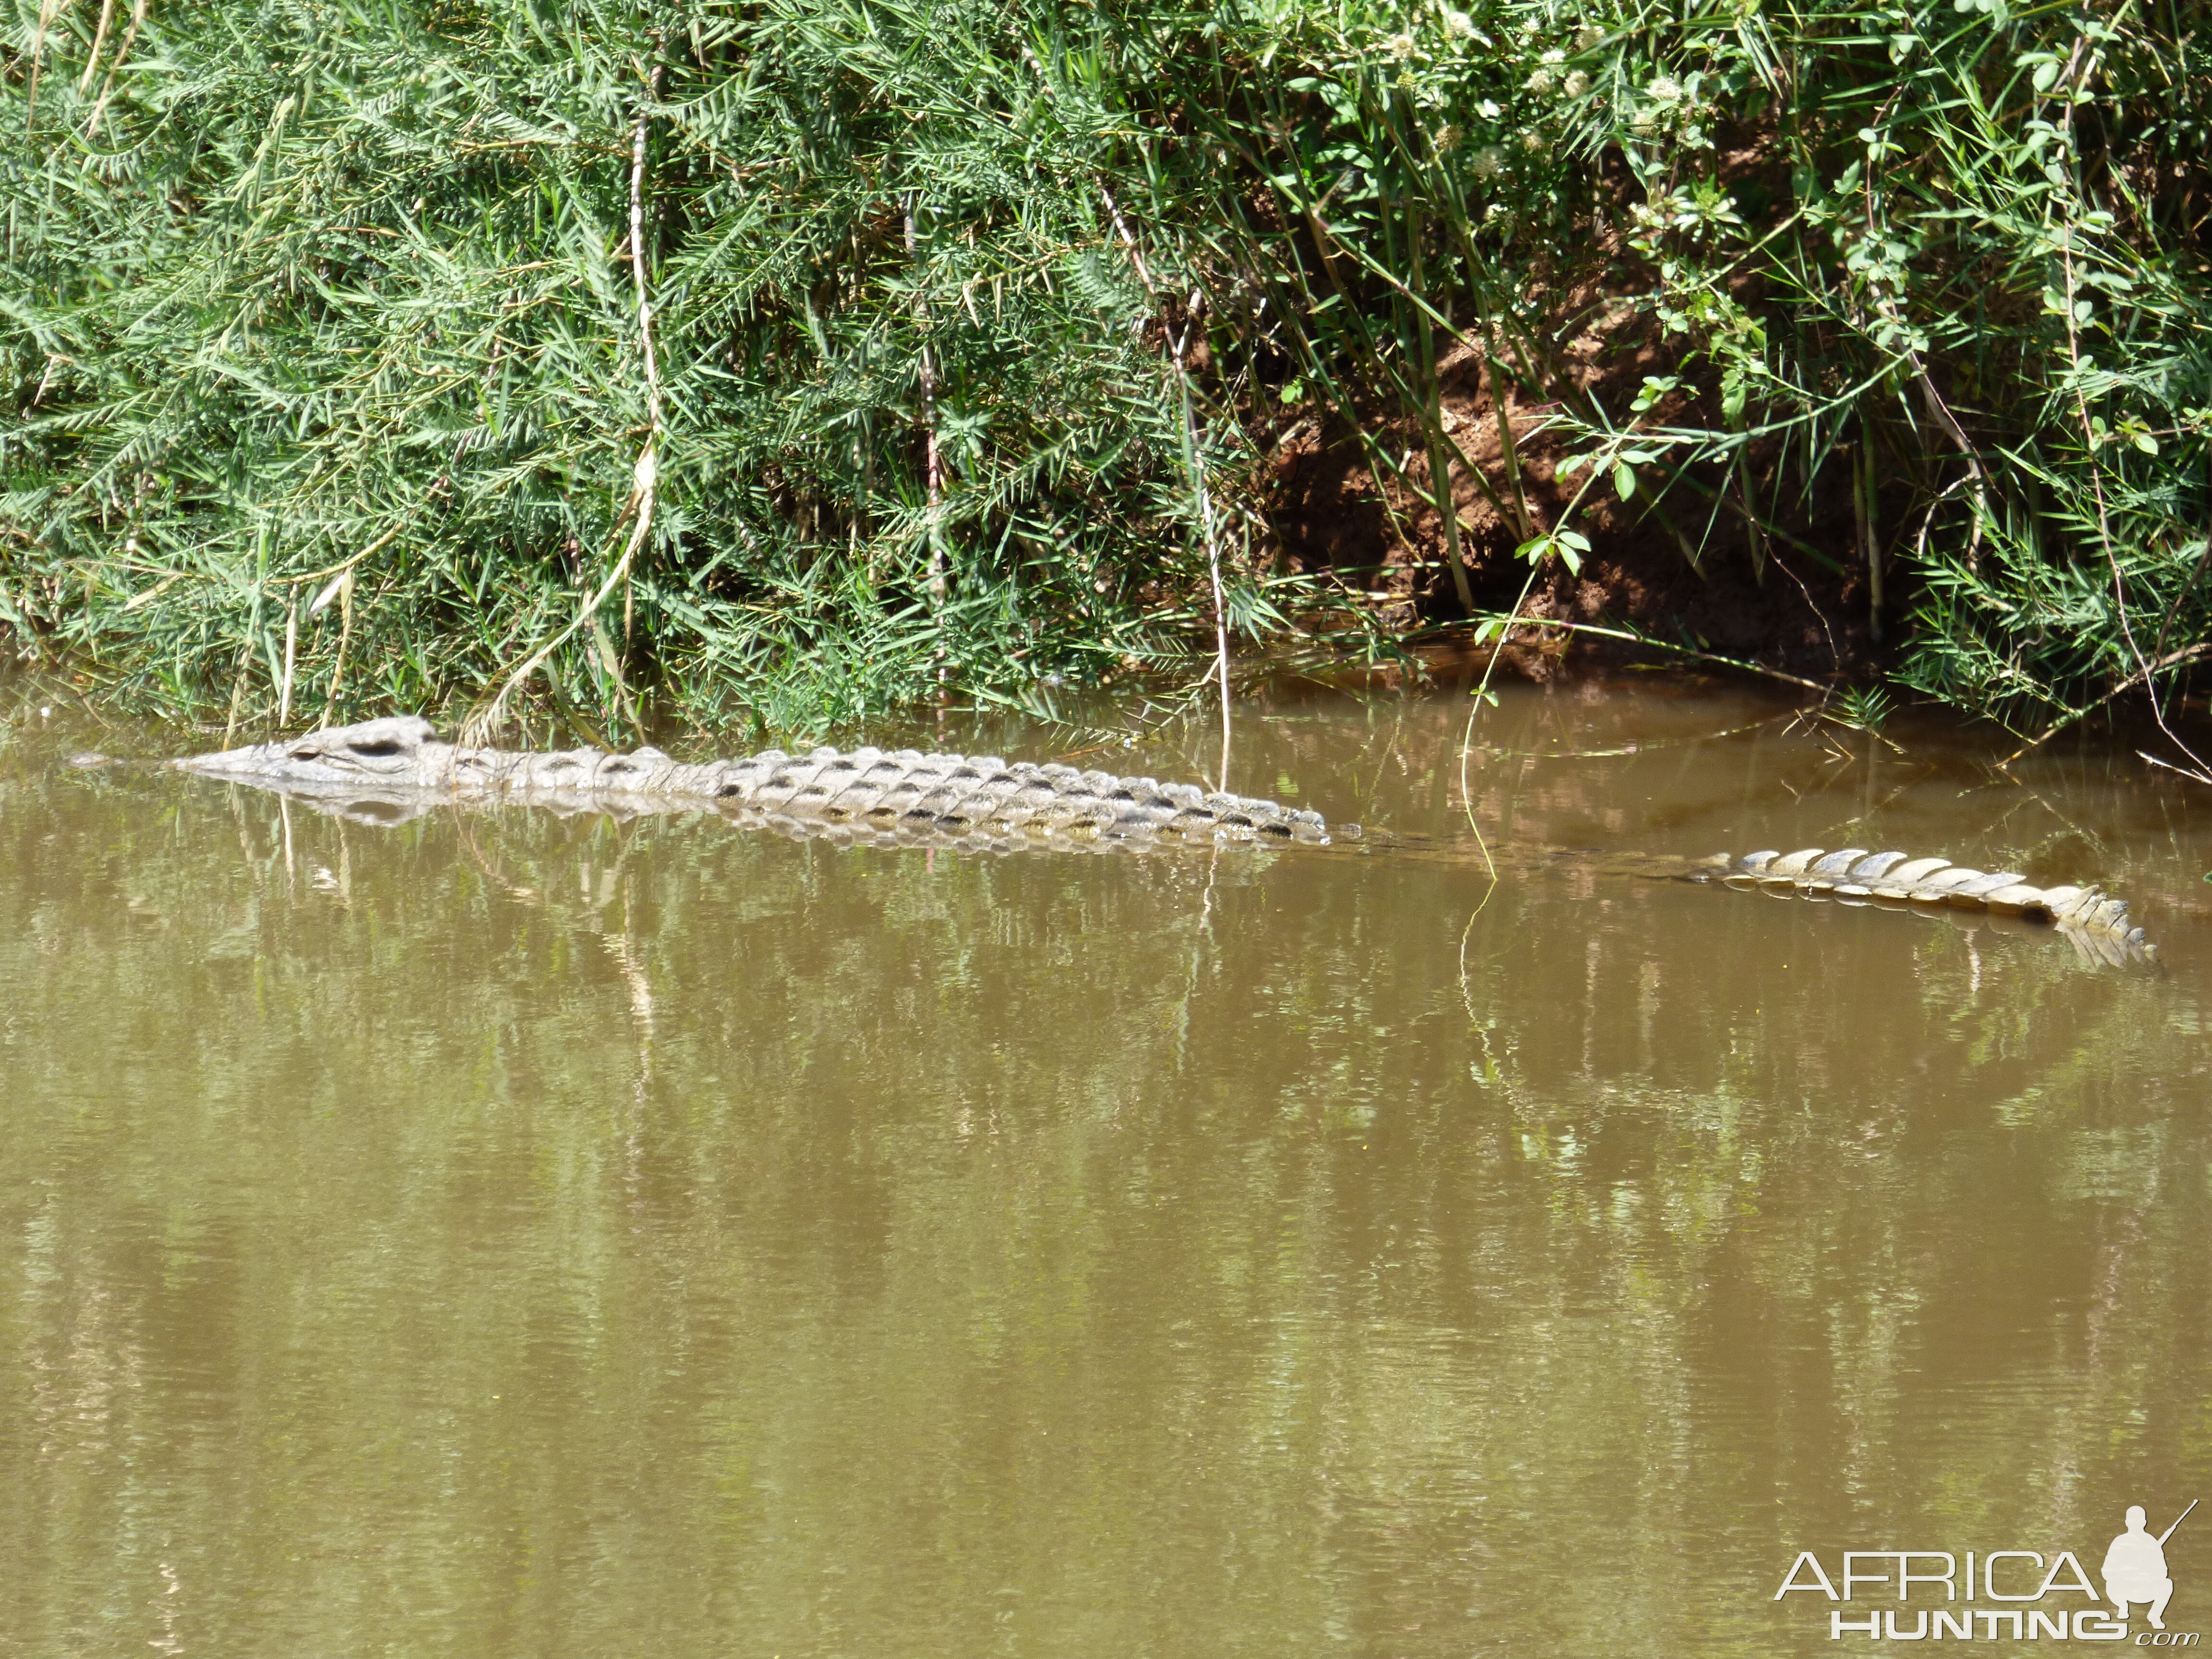 Crocodile in the river